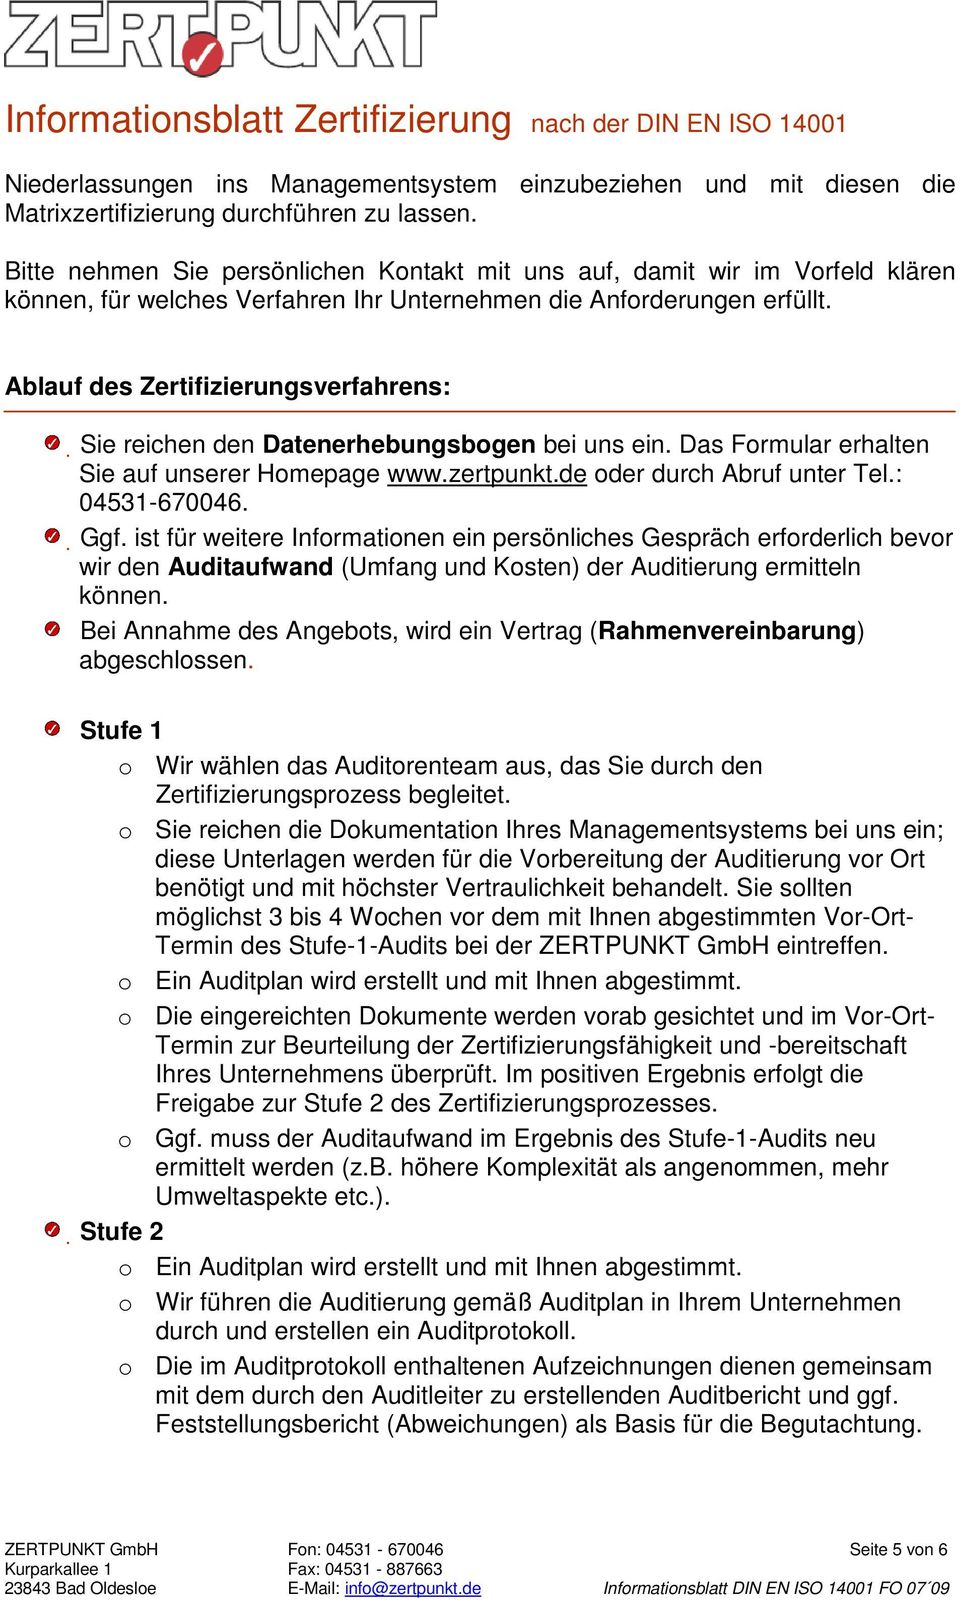 Ablauf des Zertifizierungsverfahrens: Sie reichen den Datenerhebungsbogen bei uns ein. Das Formular erhalten Sie auf unserer Homepage www.zertpunkt.de oder durch Abruf unter Tel.: 04531-670046. Ggf.